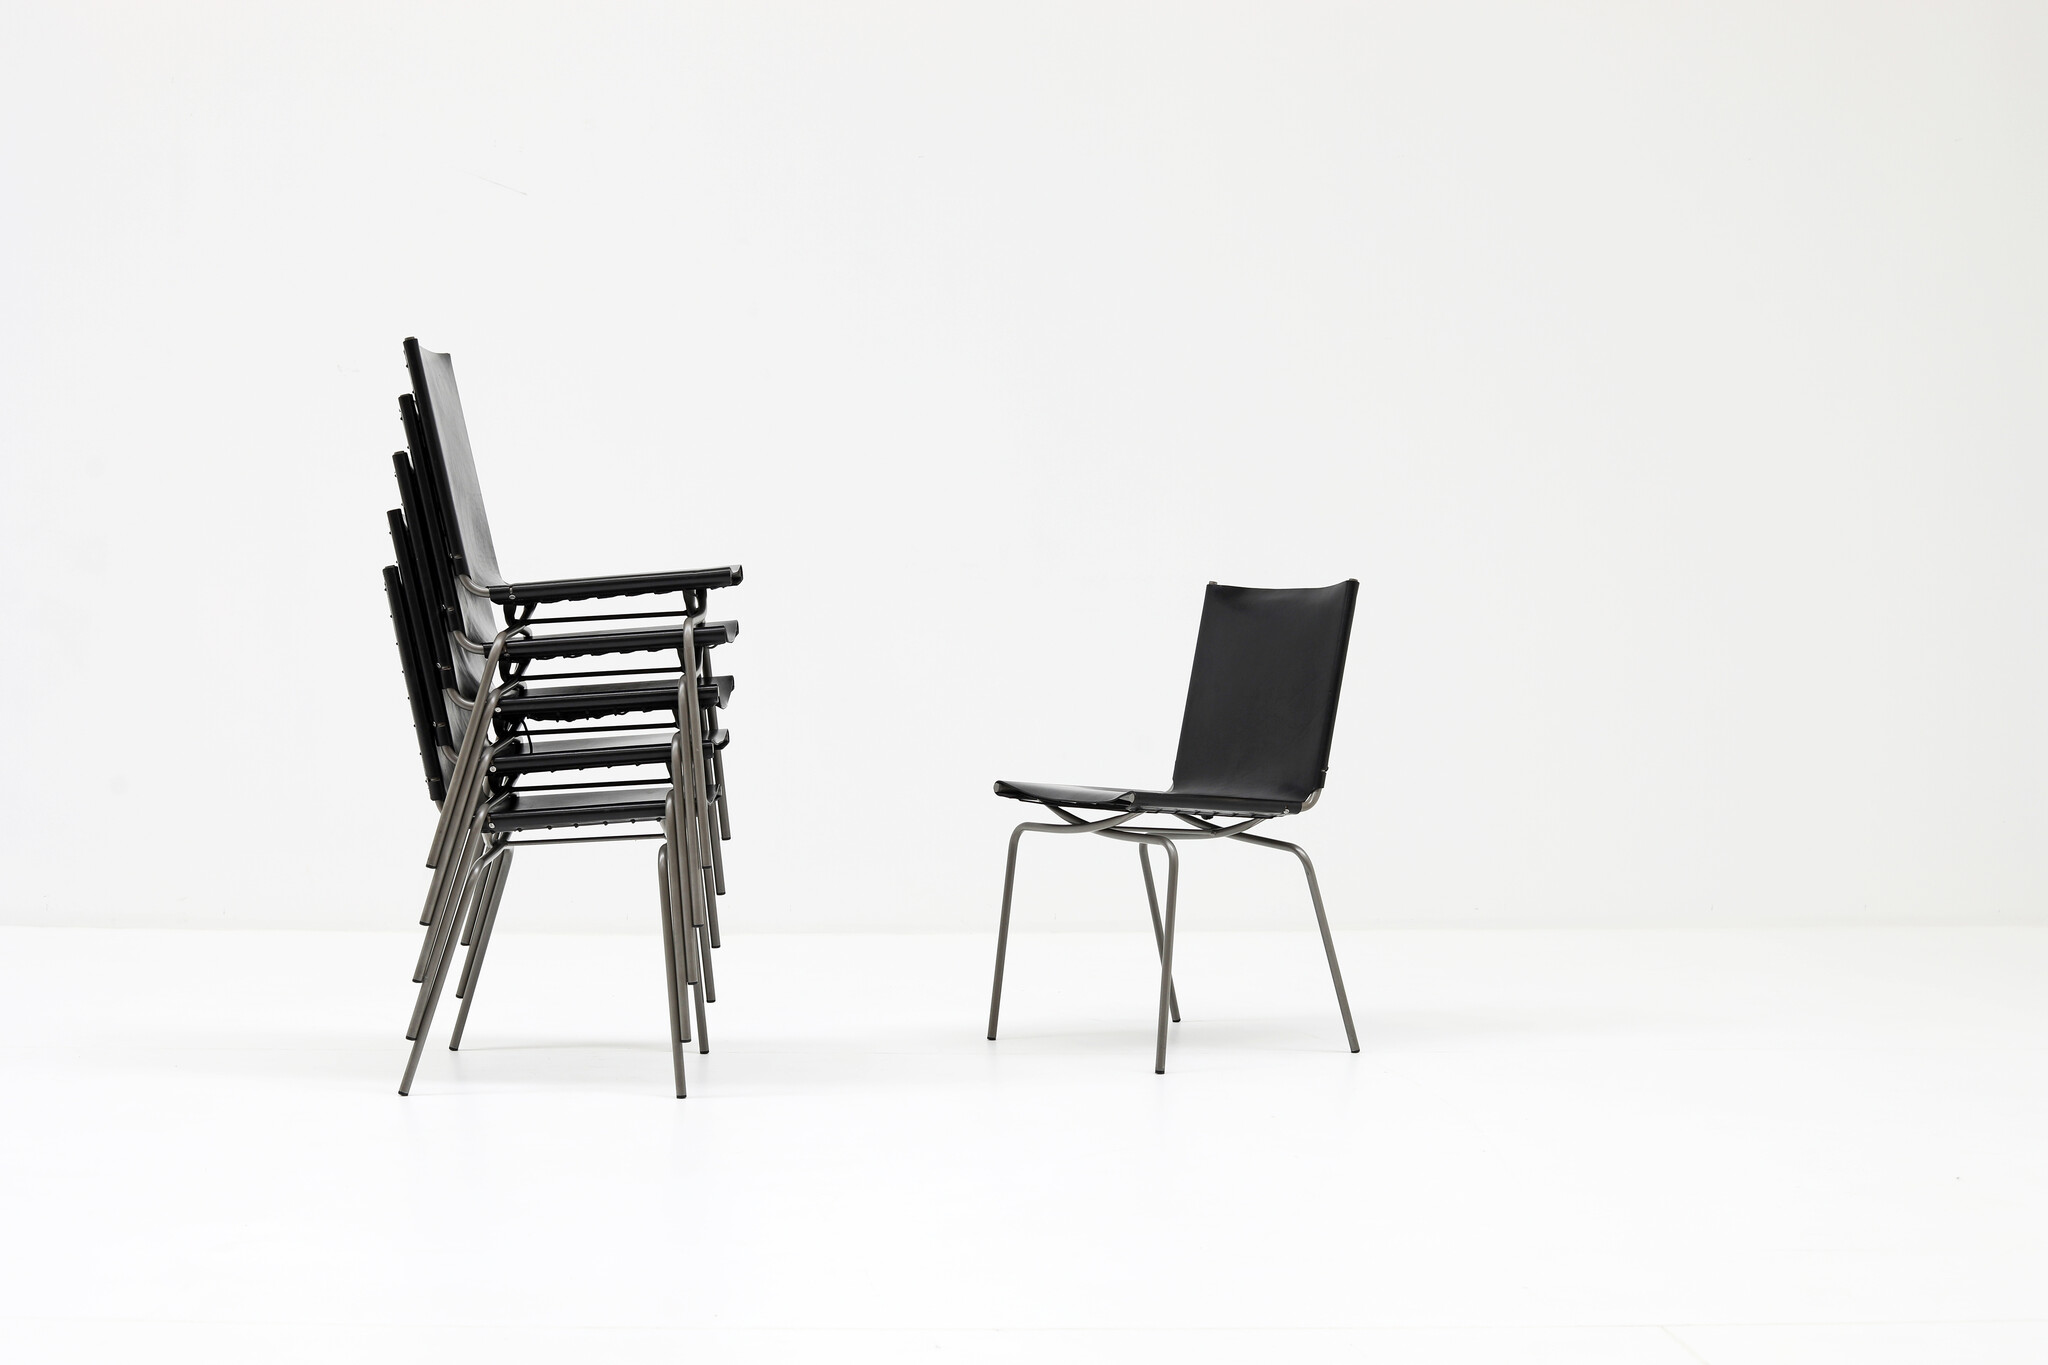 Fabiaan Van Severen "Crossed Leg" dining room chairs